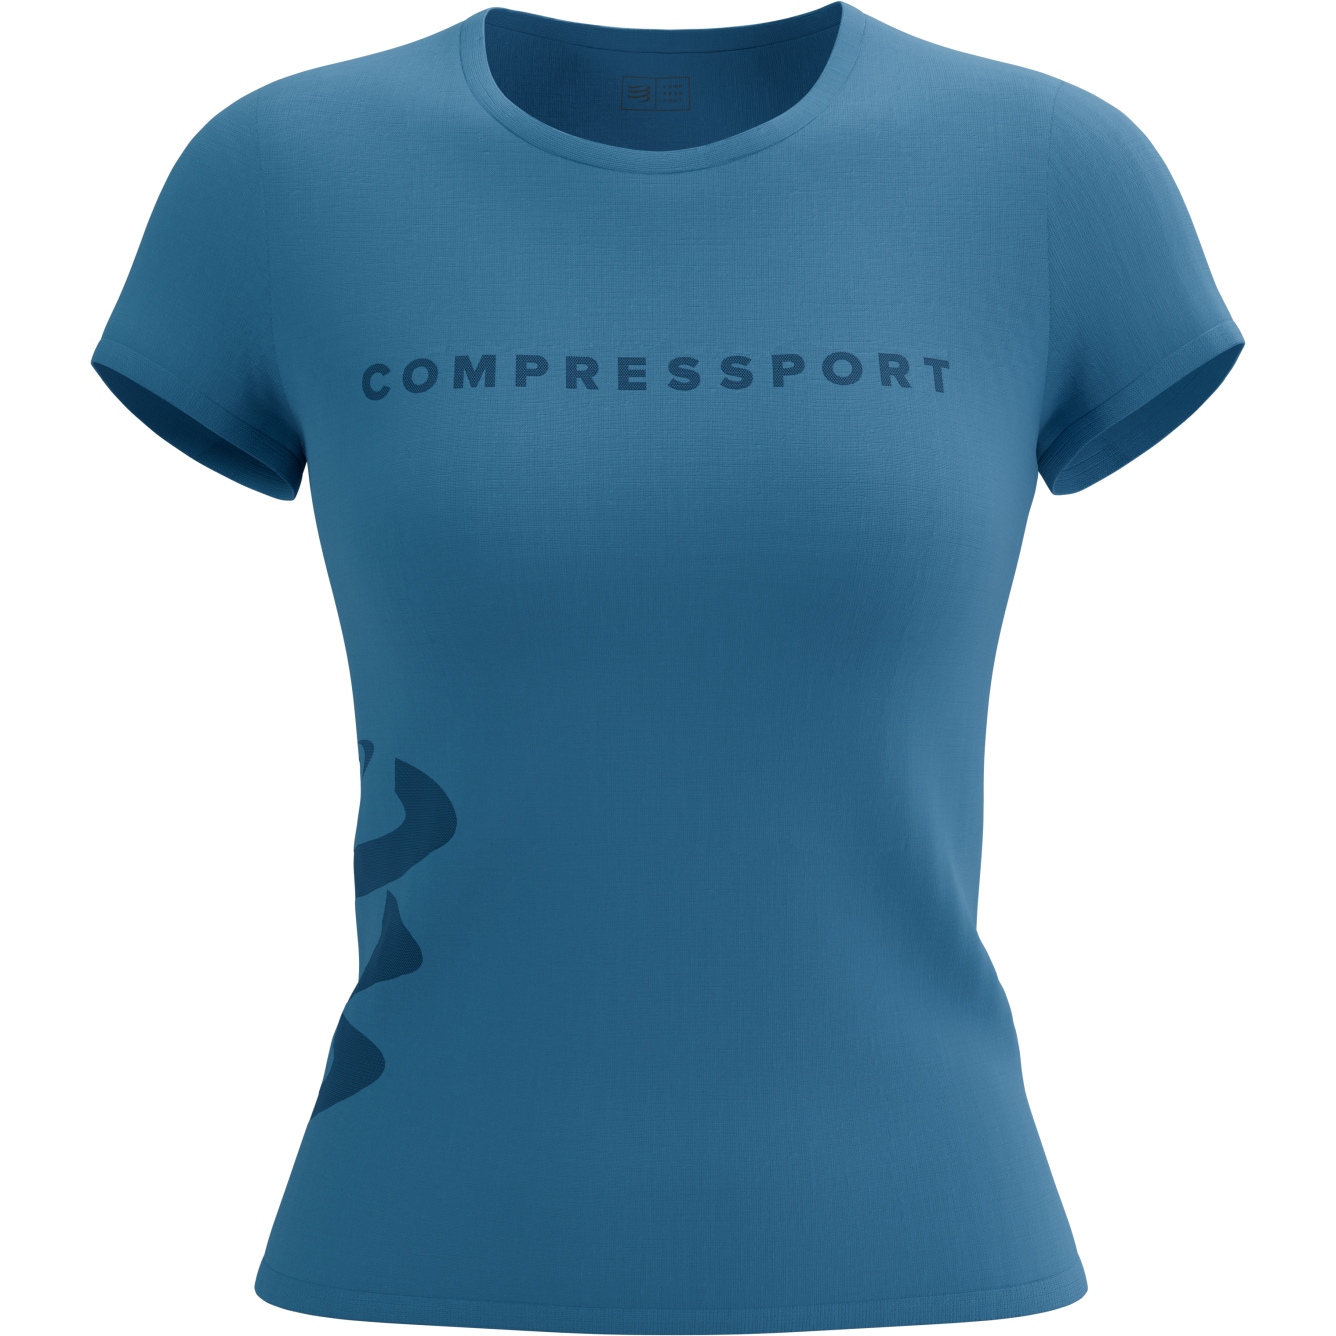 Produktbild von Compressport Logo T-Shirt Damen - pacific coast/estate blue